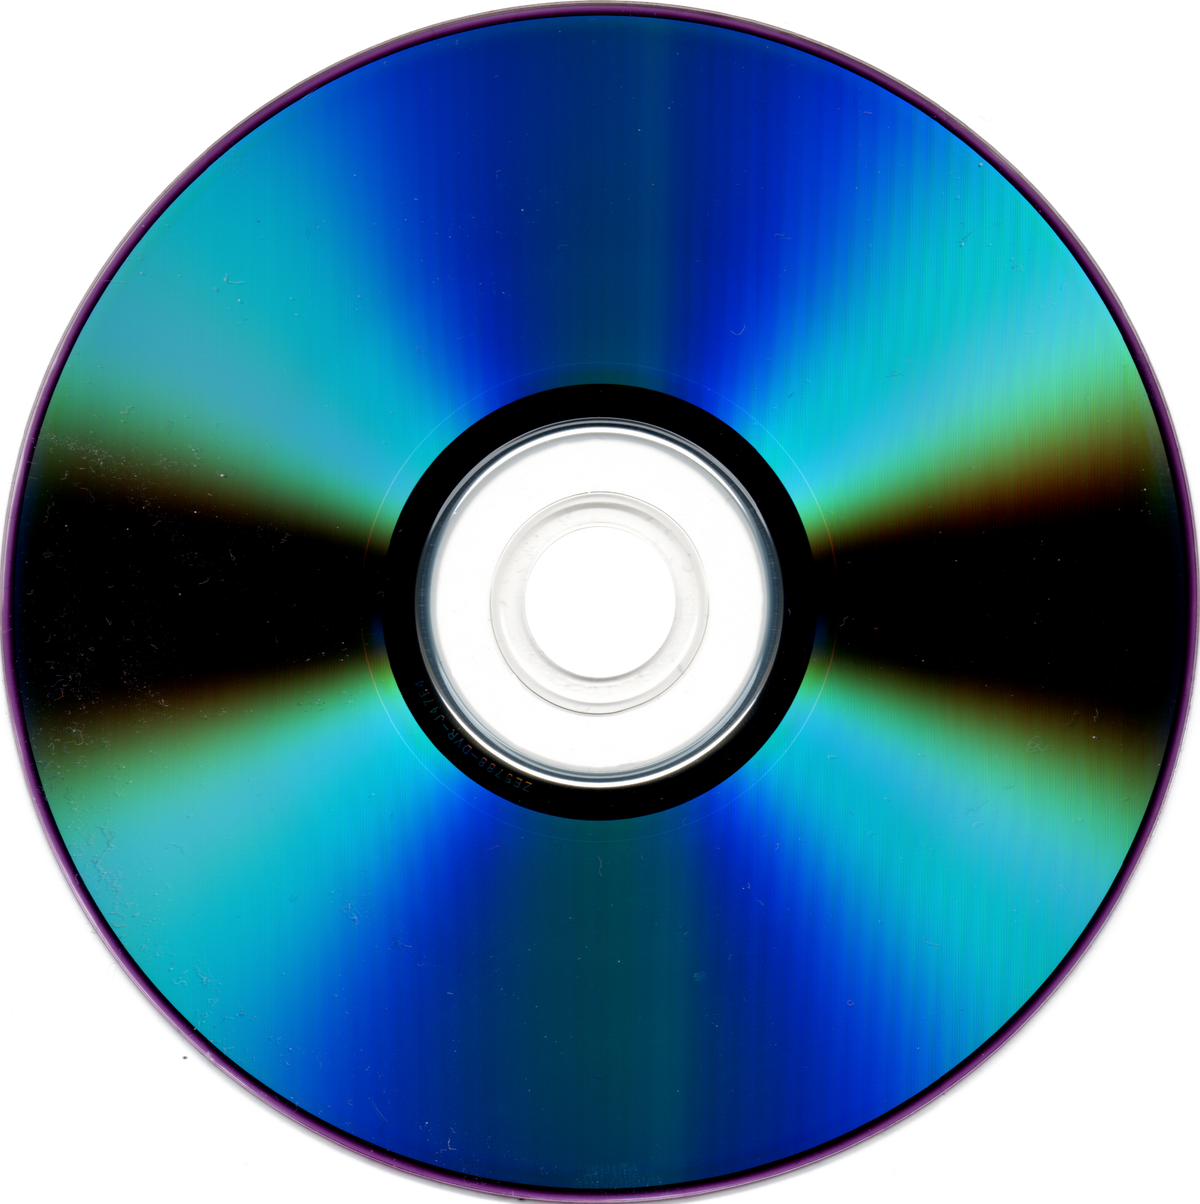 저장매체 변천사(3): 매체의 천하통일을 이뤘던 CD